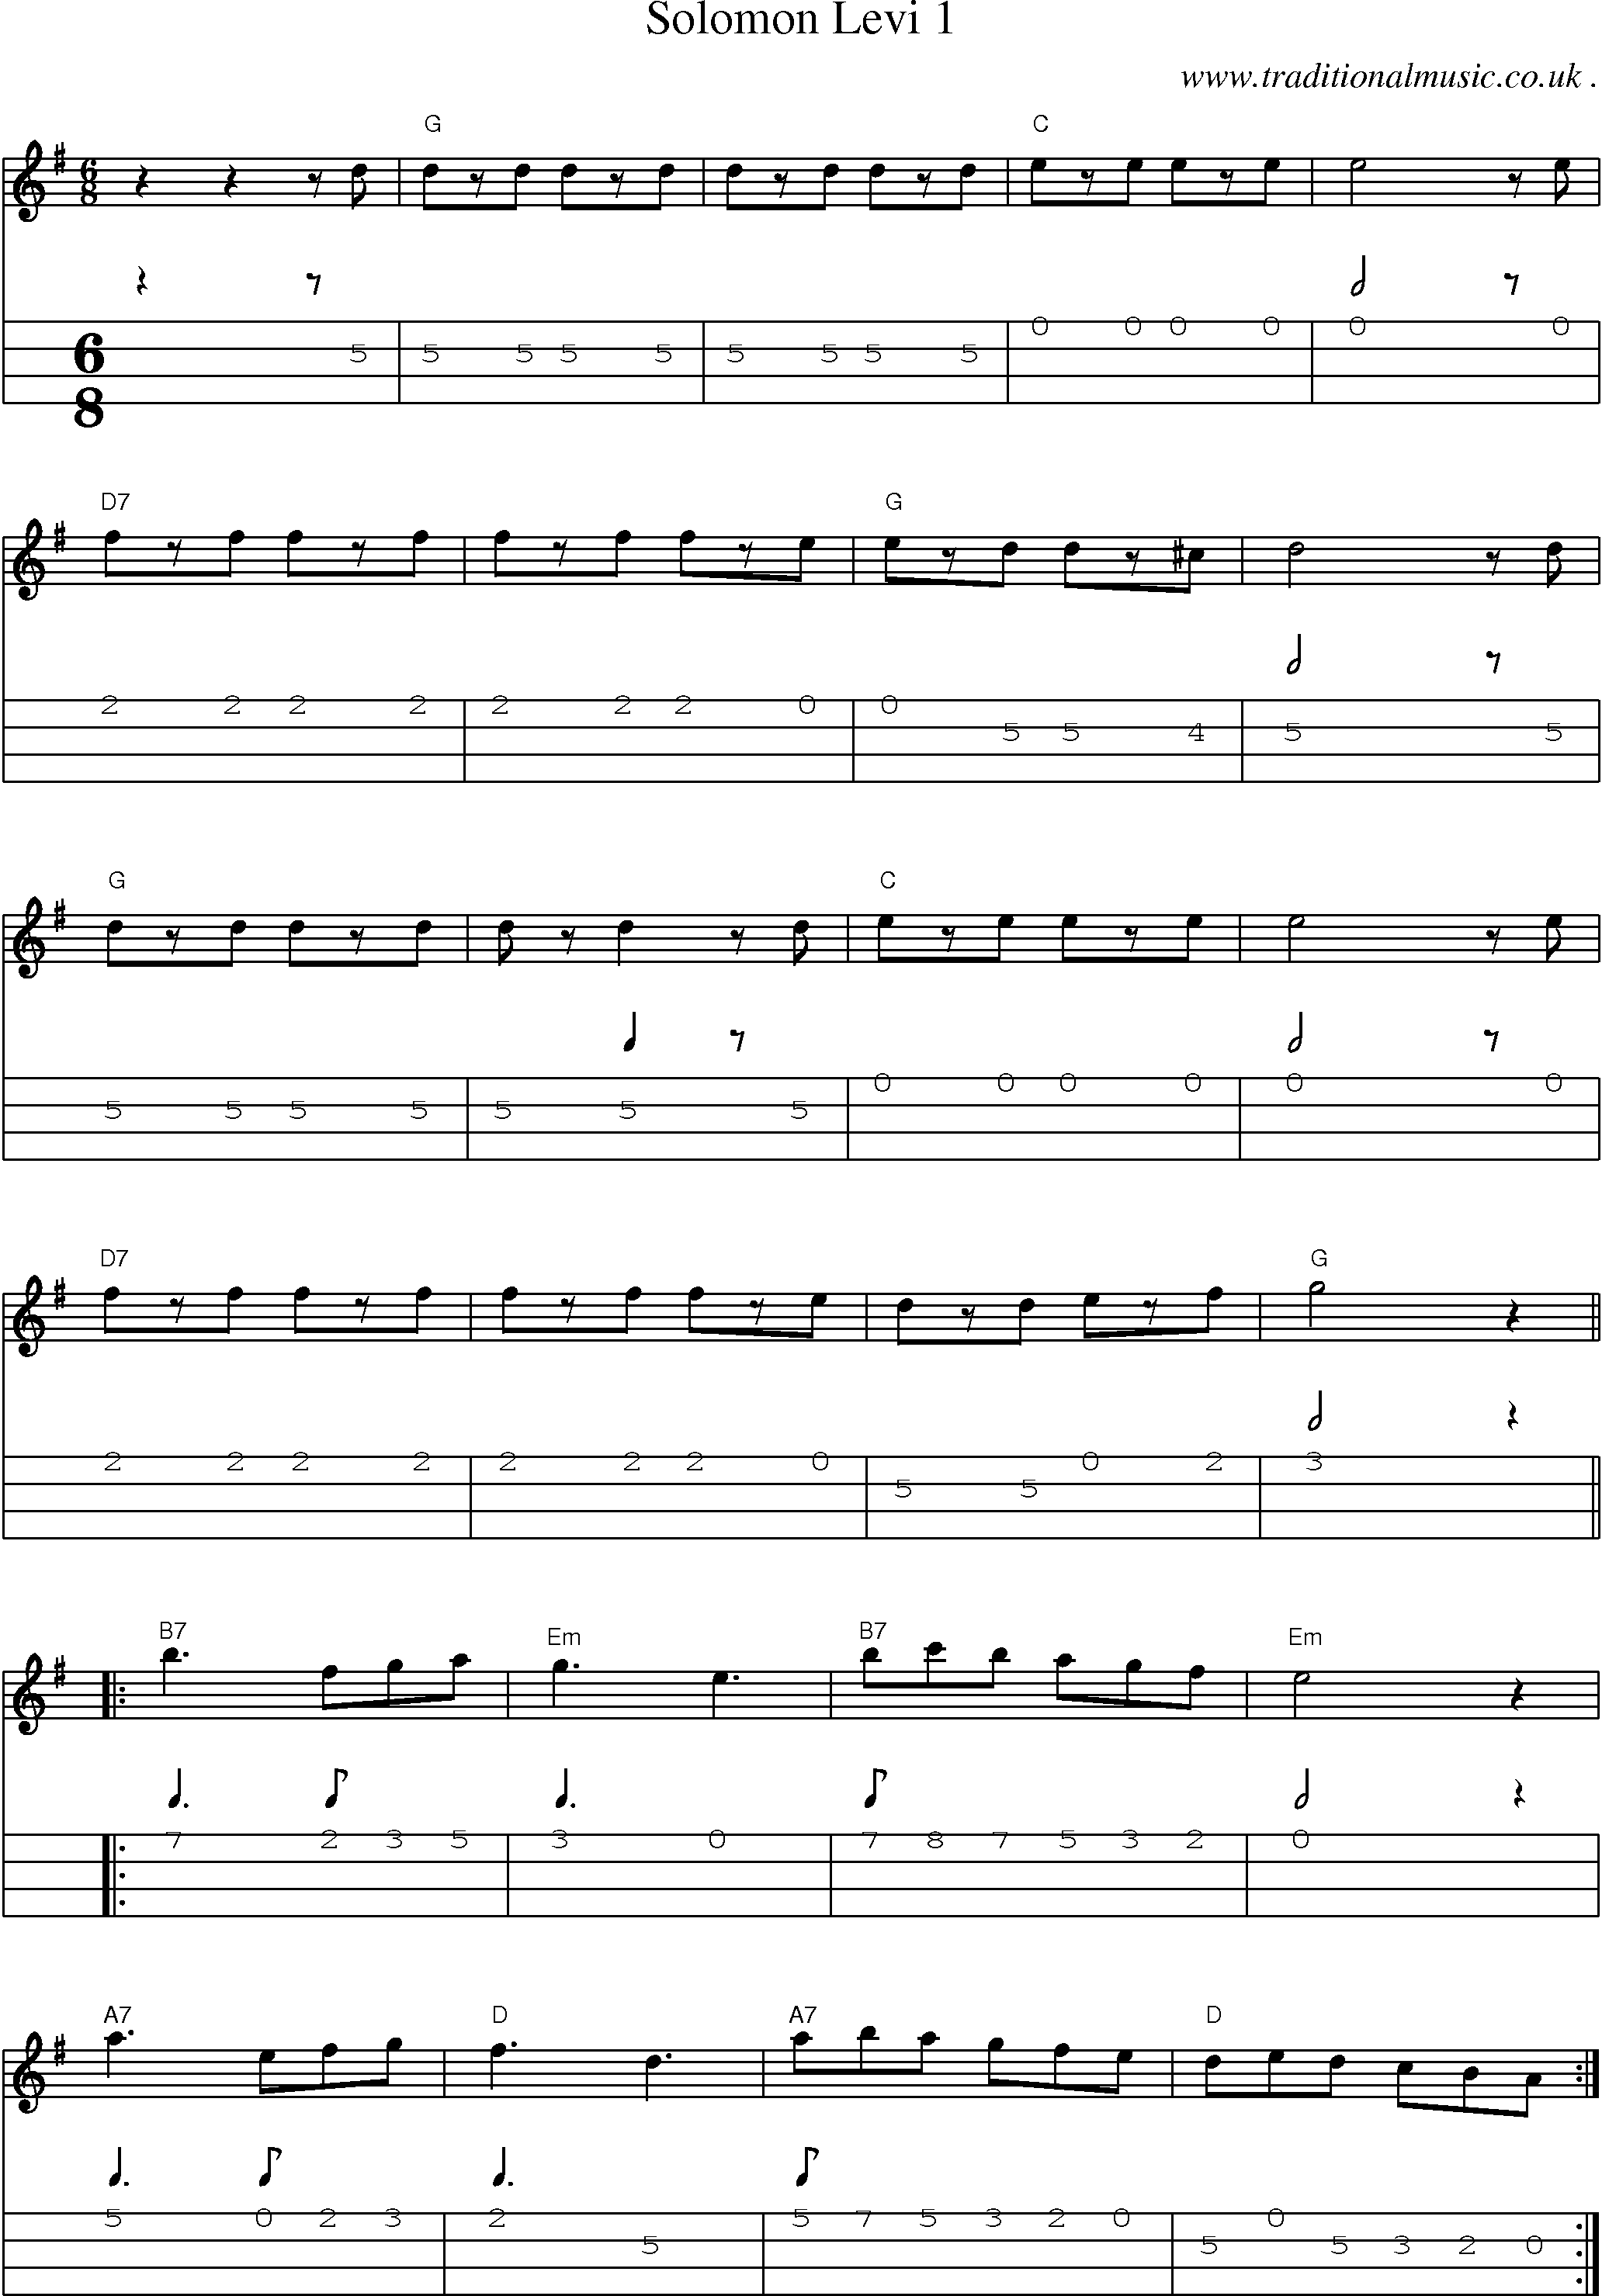 Music Score and Mandolin Tabs for Solomon Levi 1